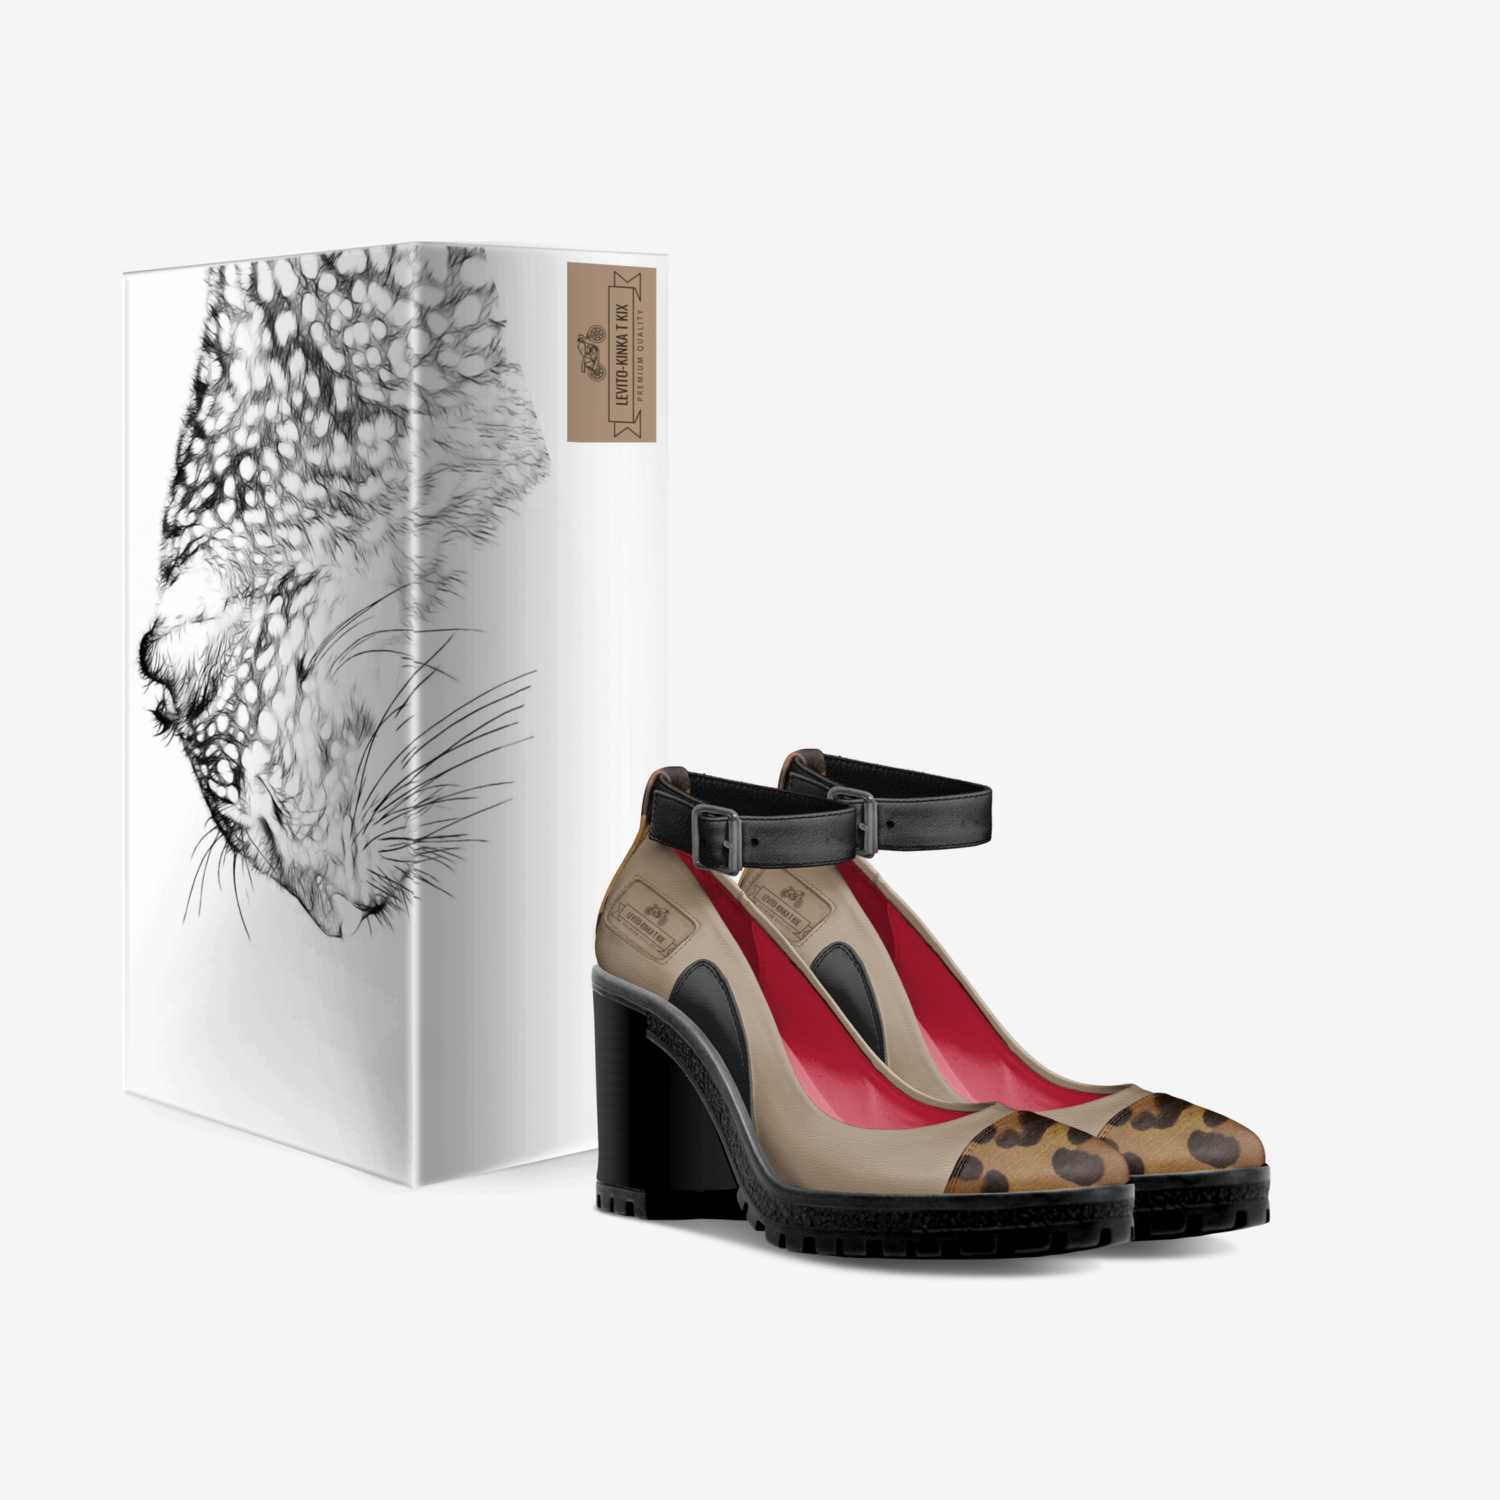 Levito-Kinka T Kix custom made in Italy shoes by Kinka T Kix | Box view